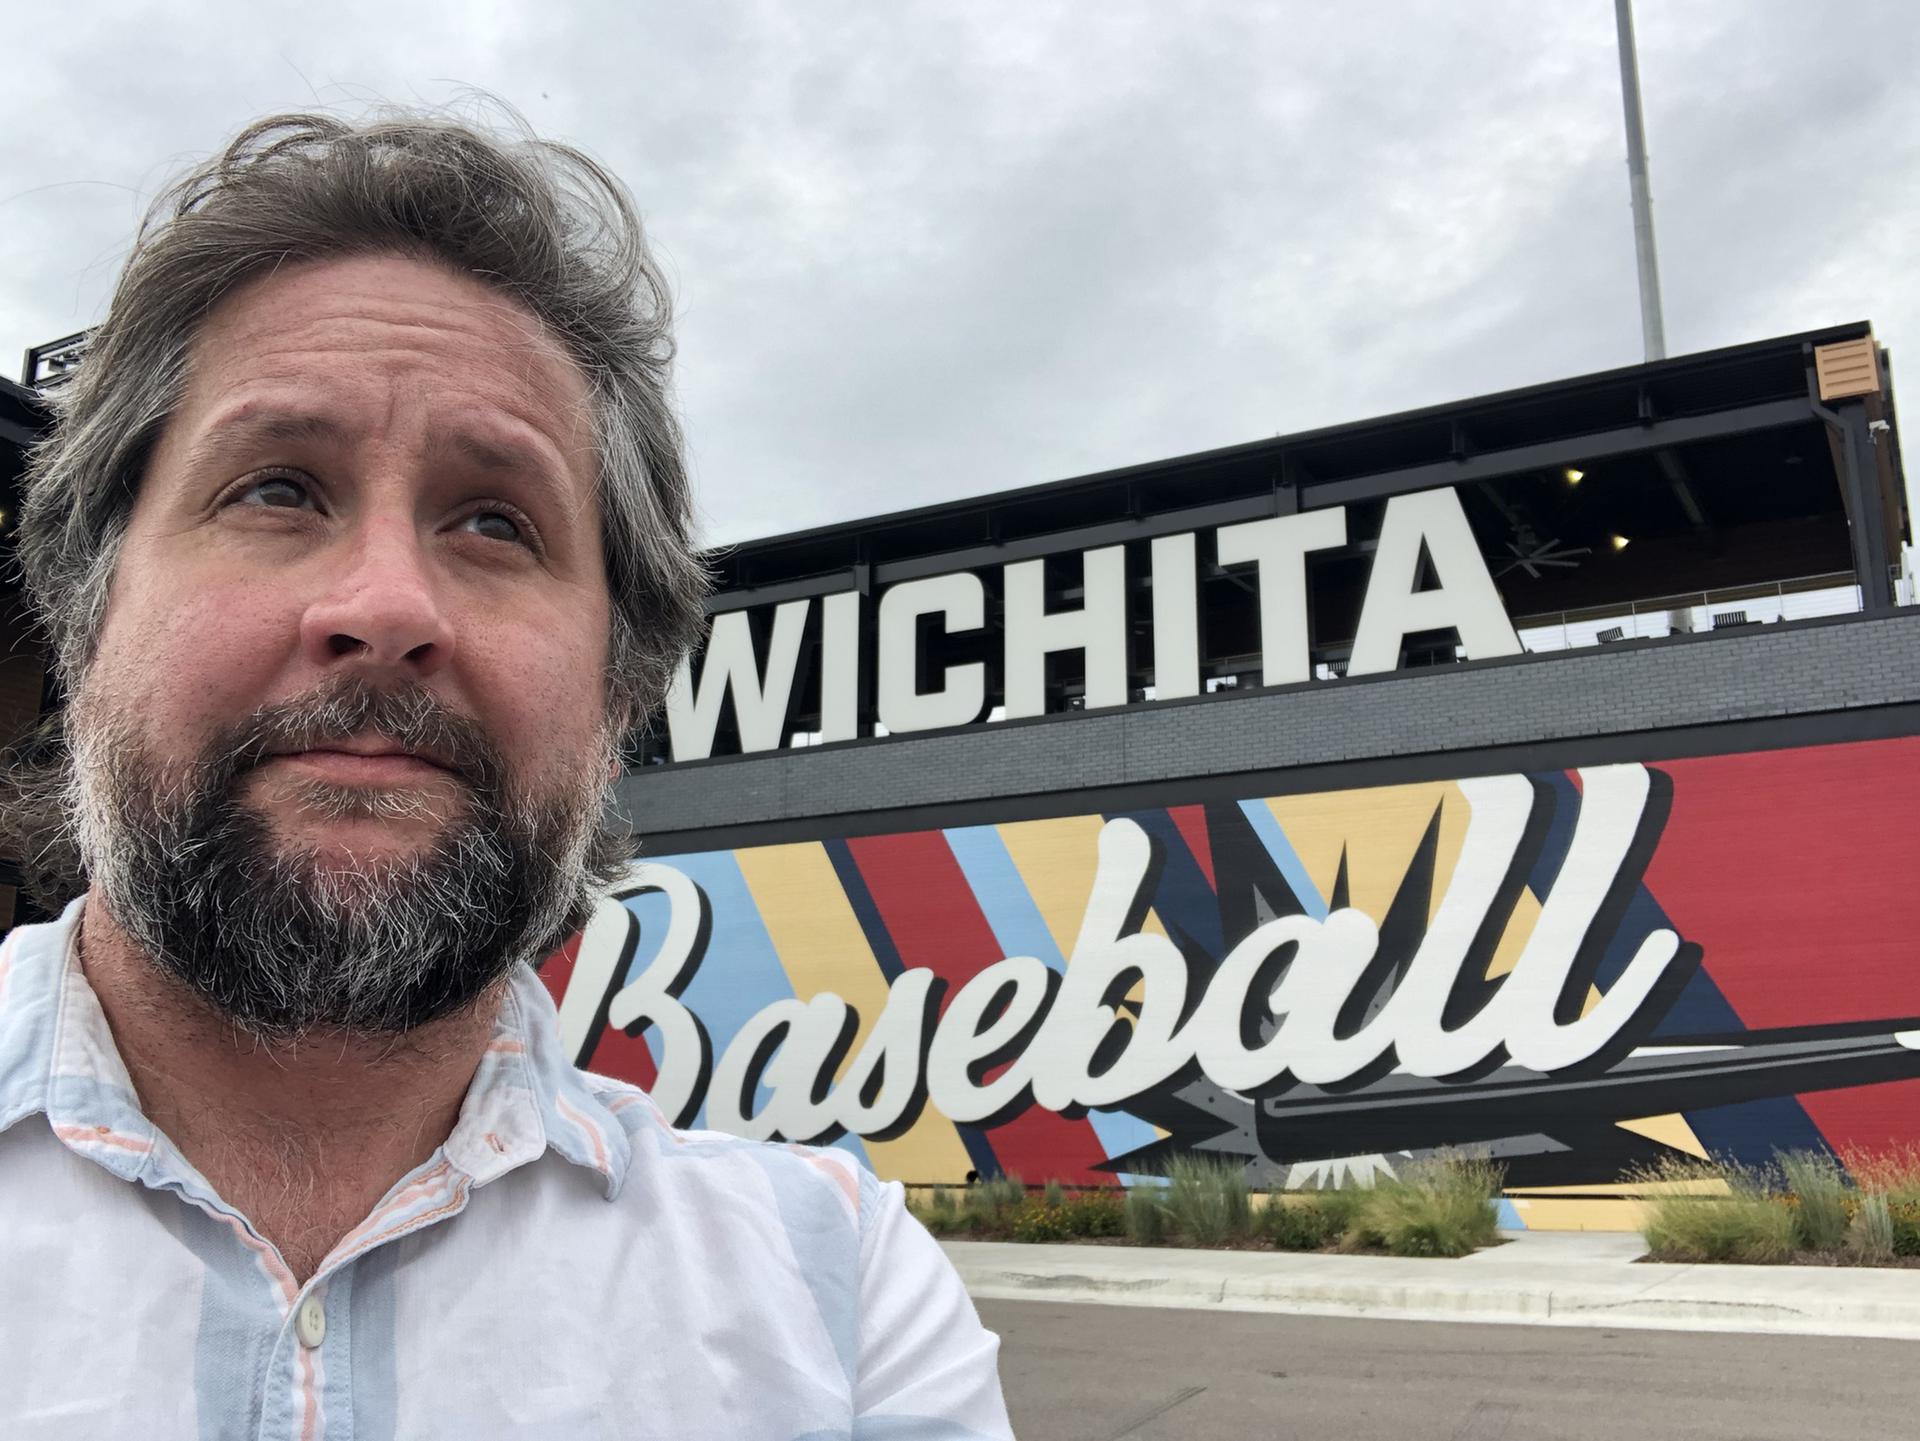 Ben in Wichita